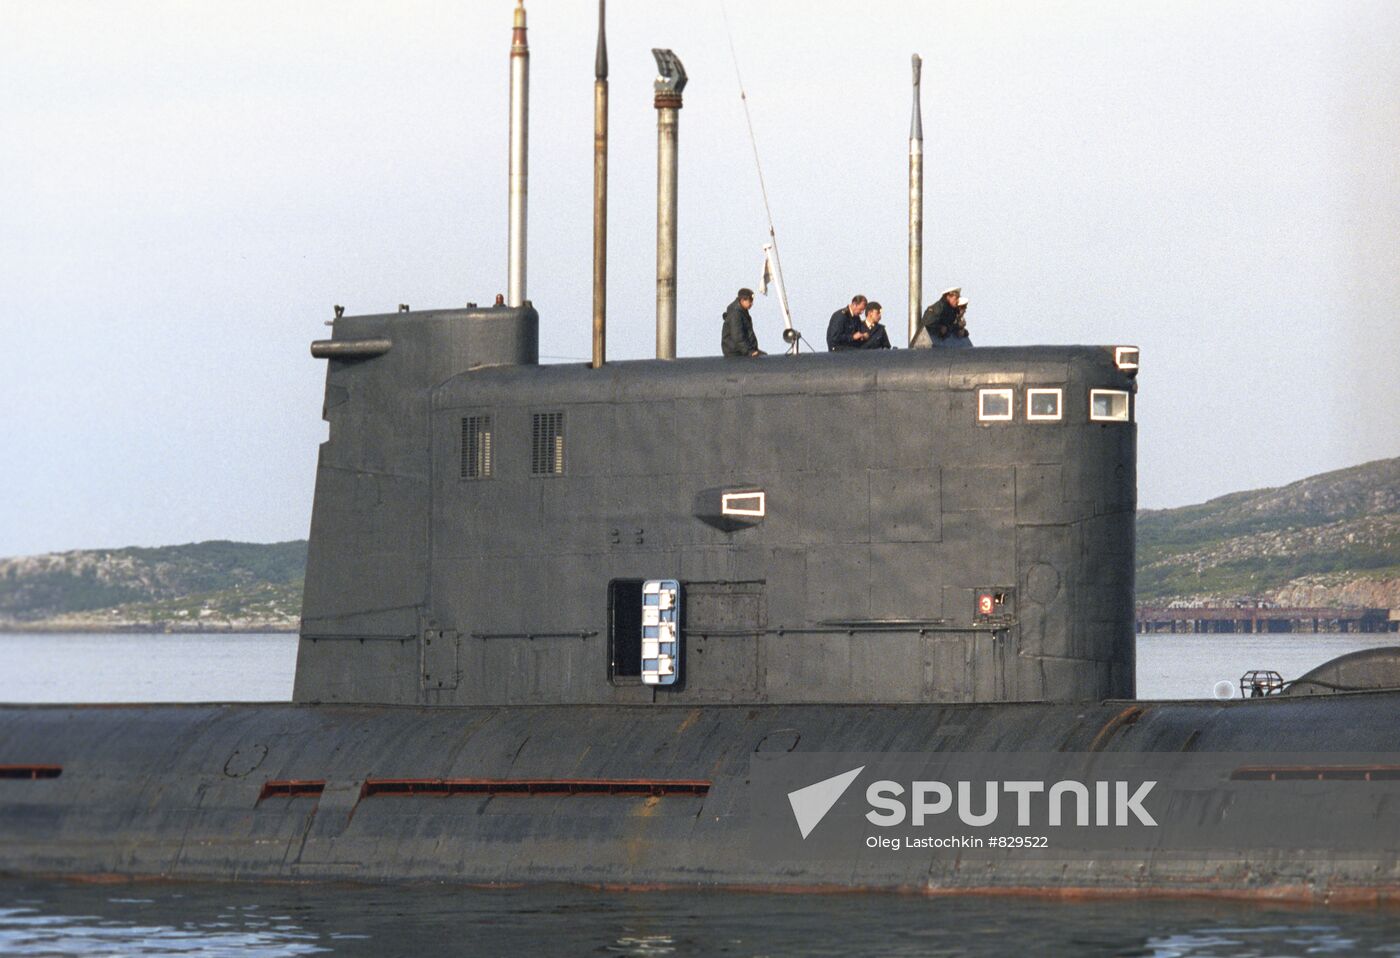 Varshavyanka class submarine